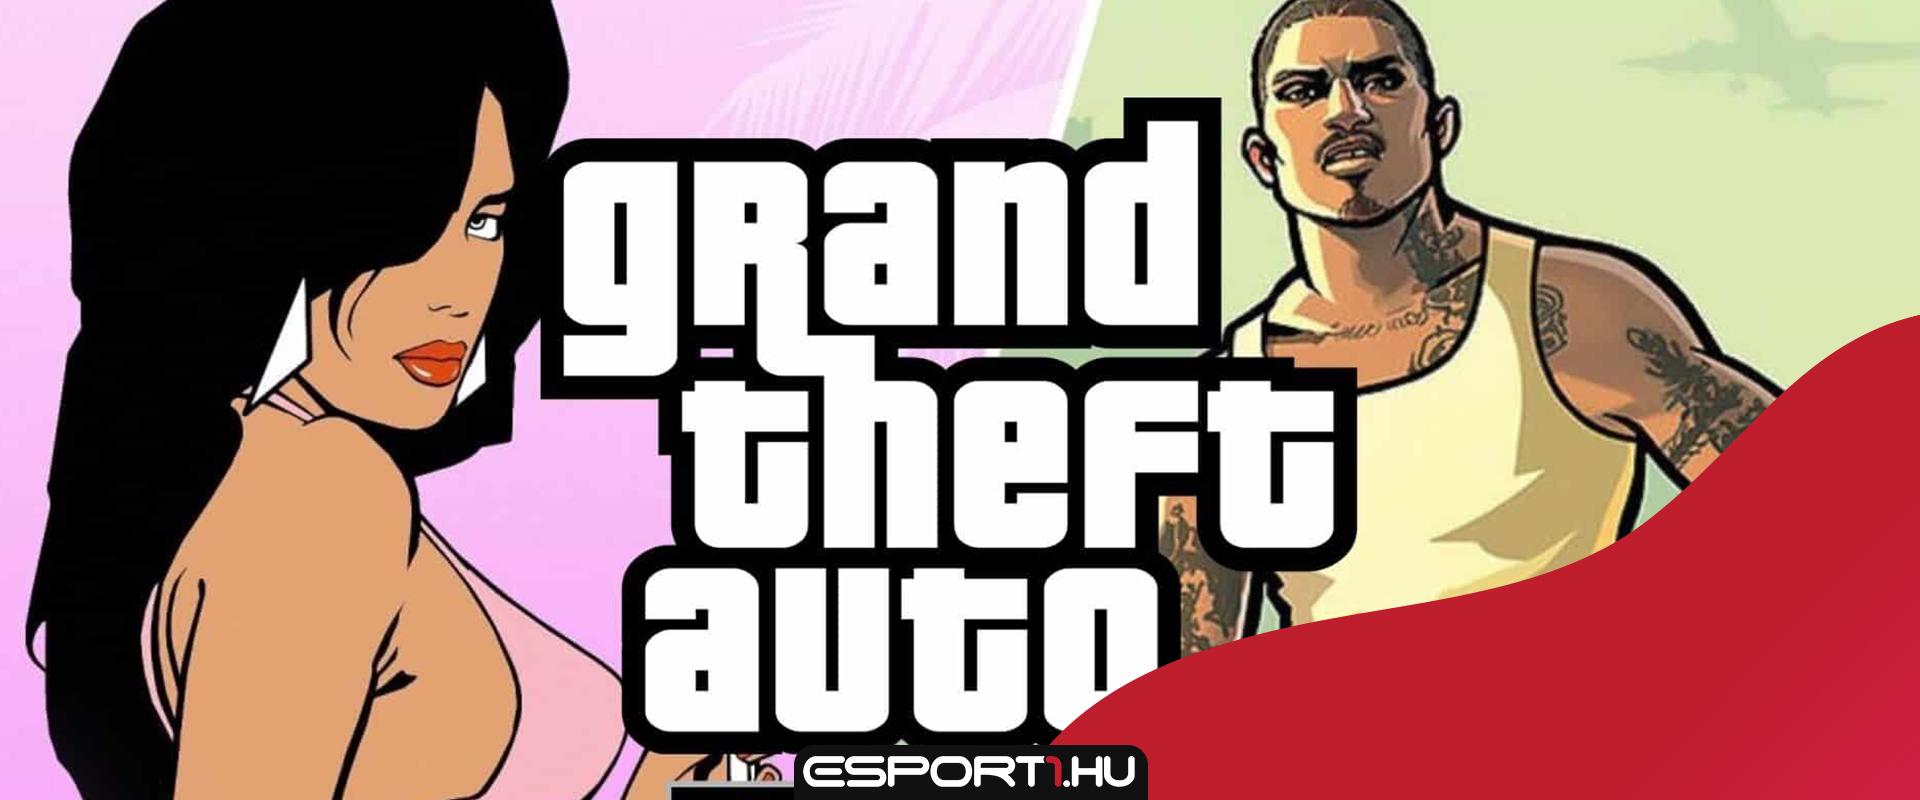 Egyre valószínűbb, hogy újradolgozzák az első három 3D-s Grand Theft Auto részeket